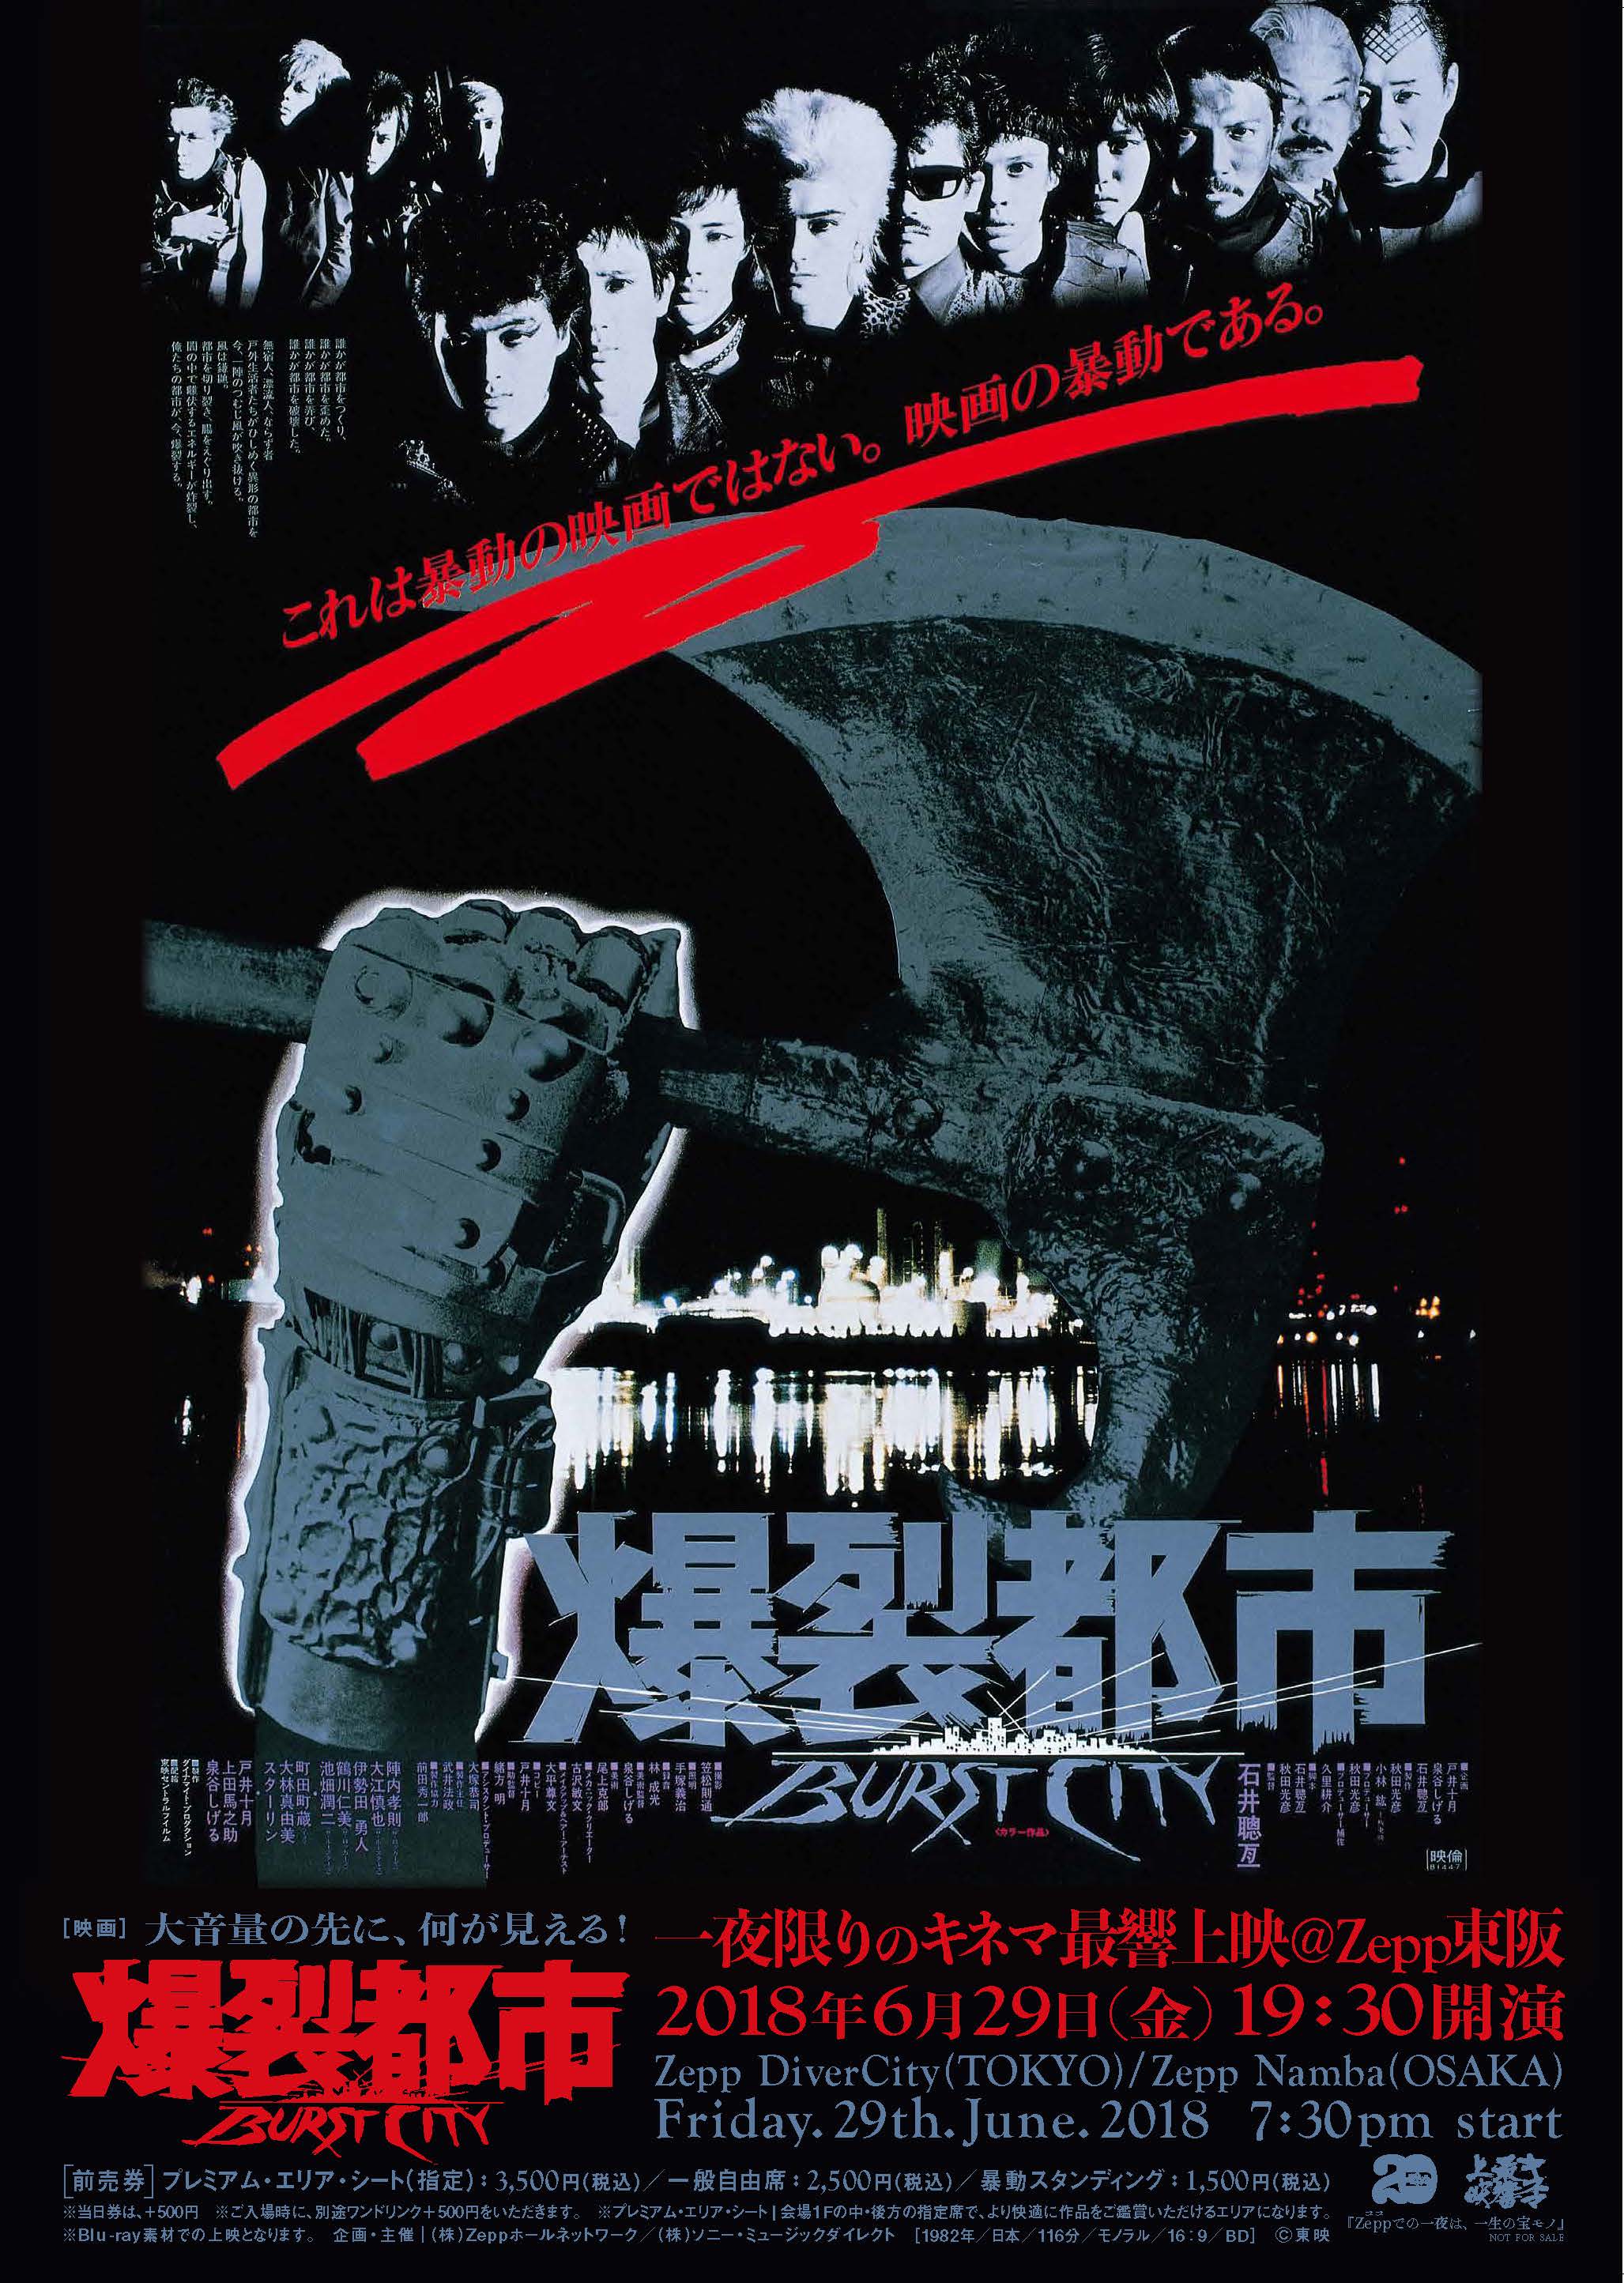 映画『爆裂都市/BURST CITY』、6.29(金)『Zeppでは最初で最後』の大